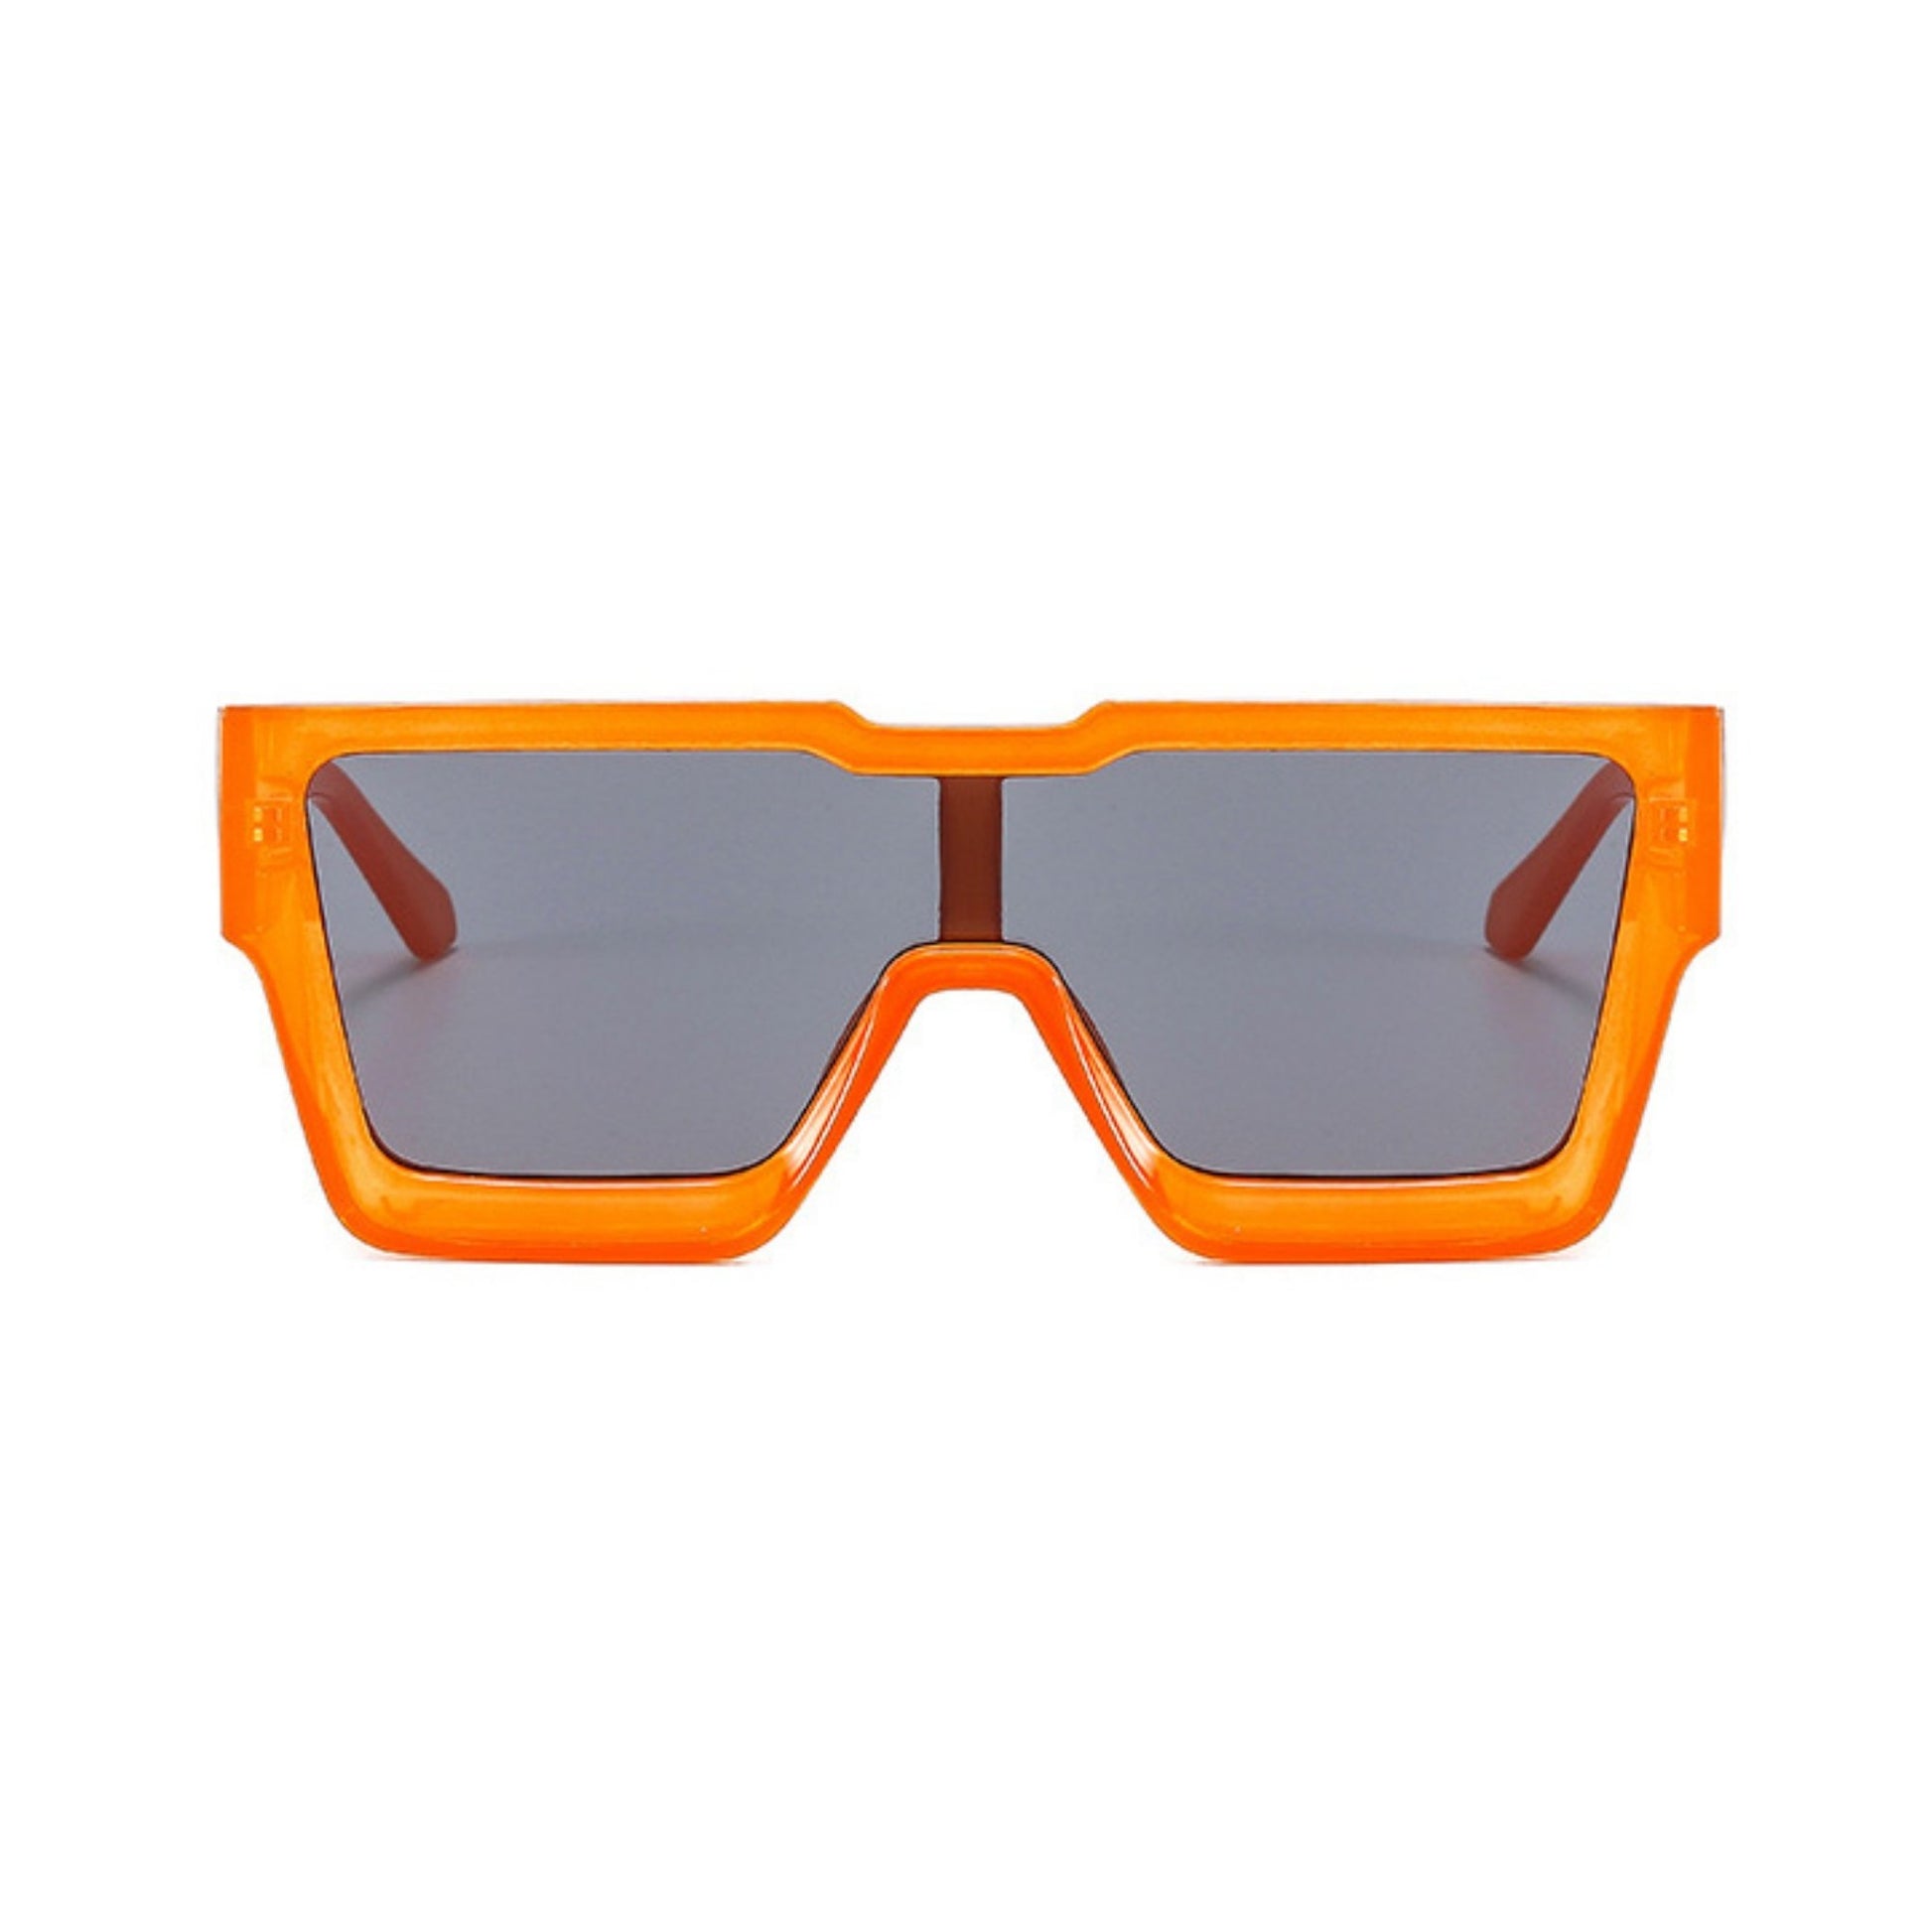 Γυαλιά ηλίου Toronto (Μάσκα) από την Exposure Sunglasses με προστασία UV400 με πορτοκαλί σκελετό και μαύρο φακό.